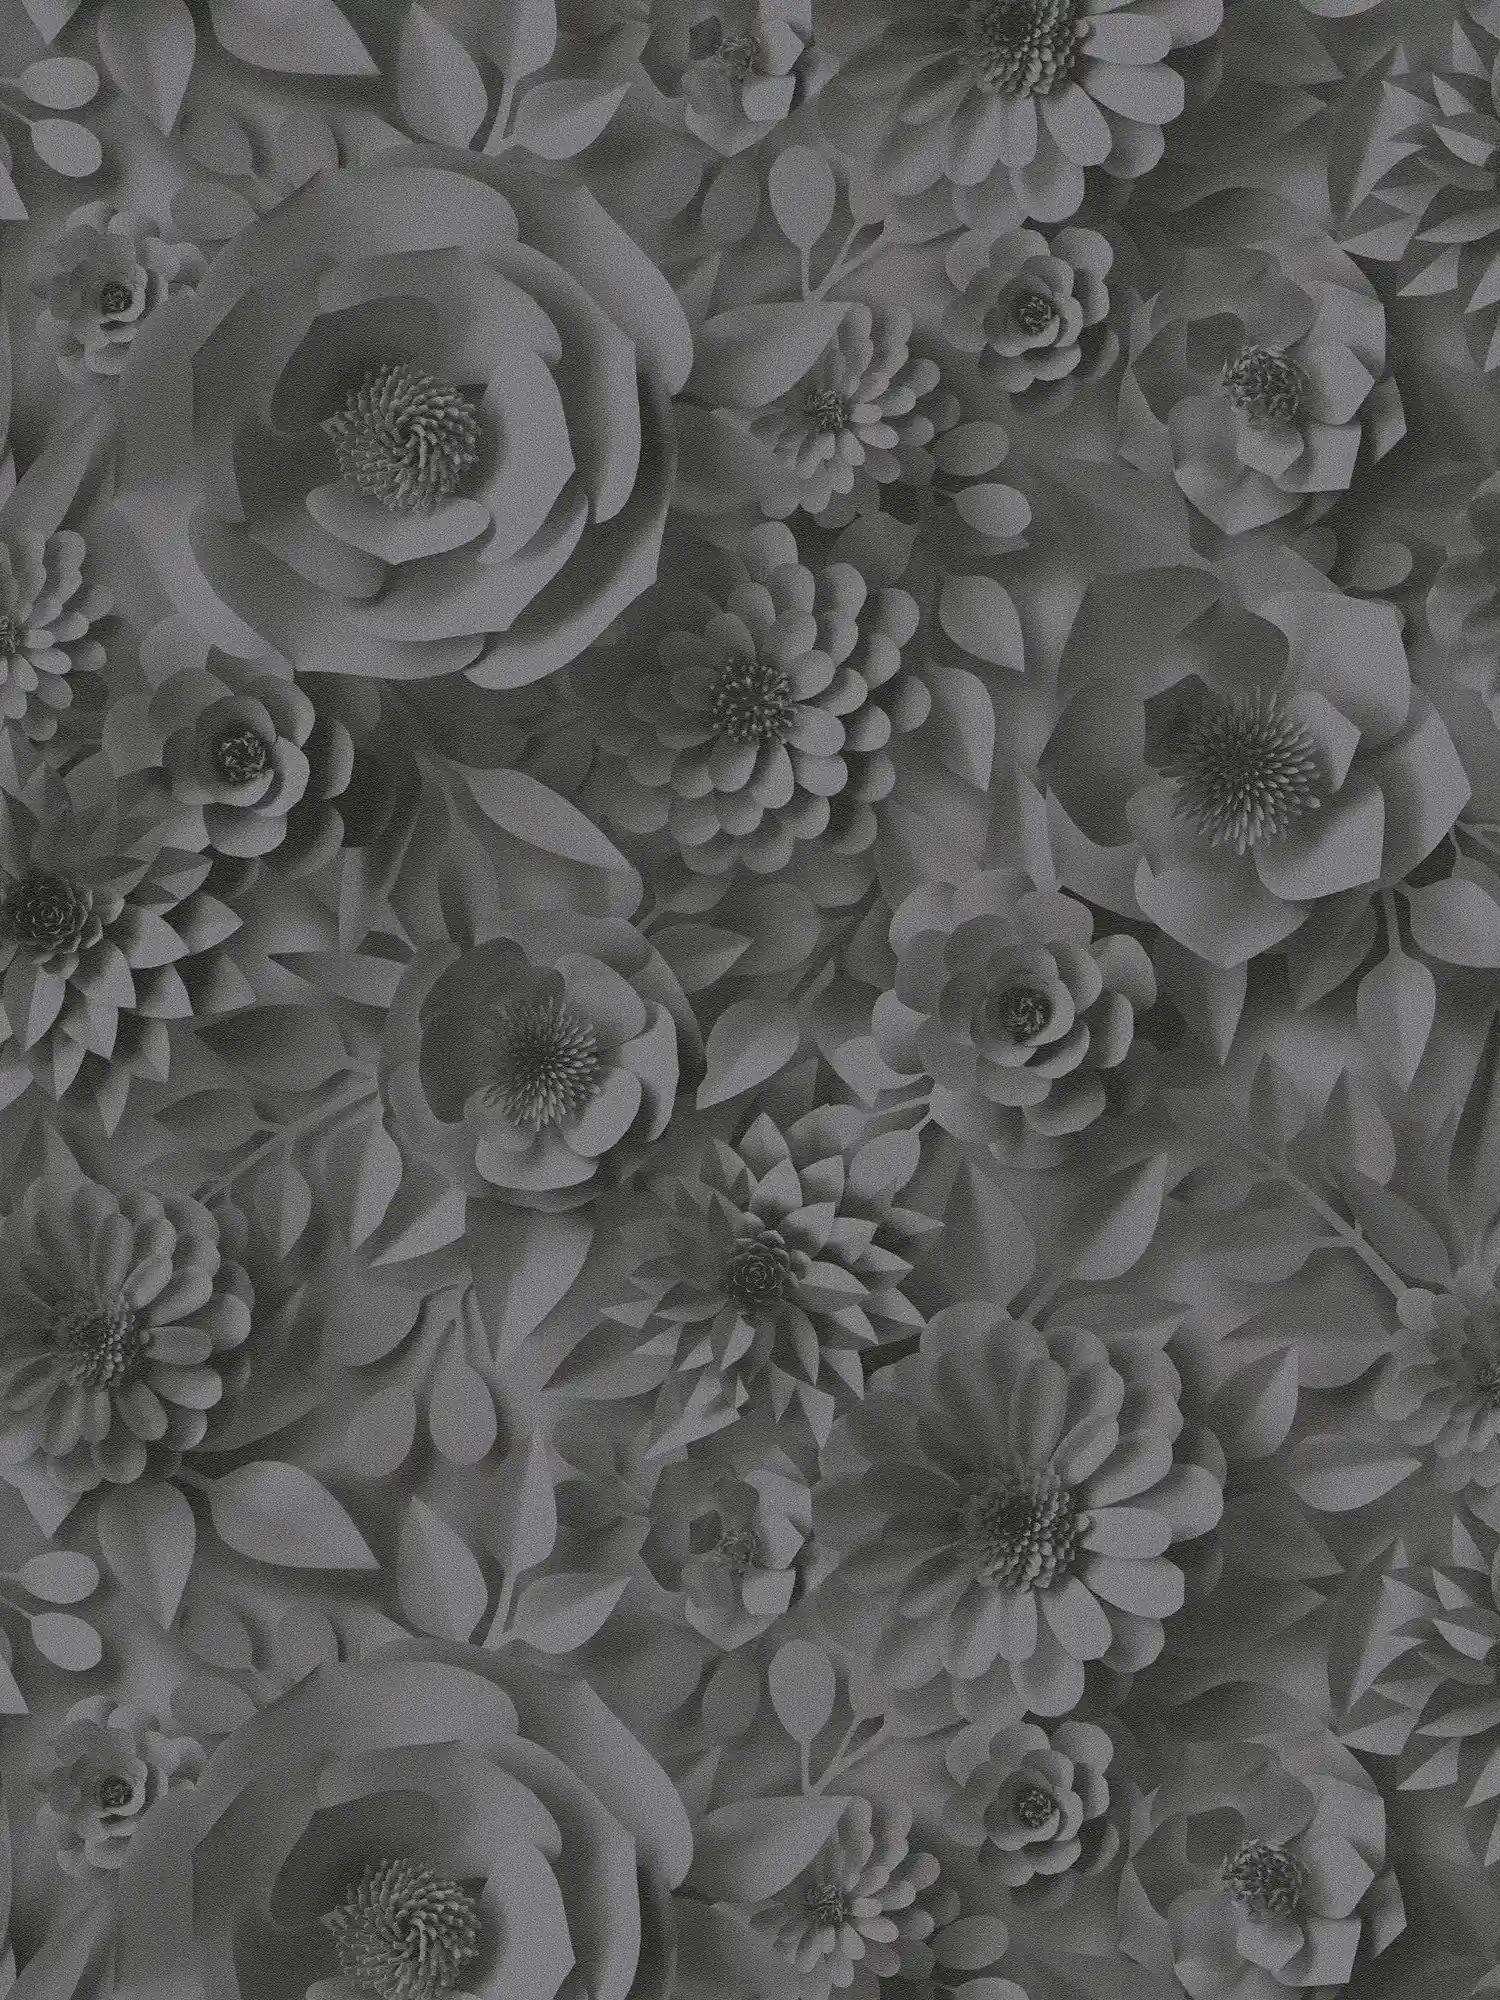         3D Tapete Blumen aus Papier – Grau, Schwarz
    